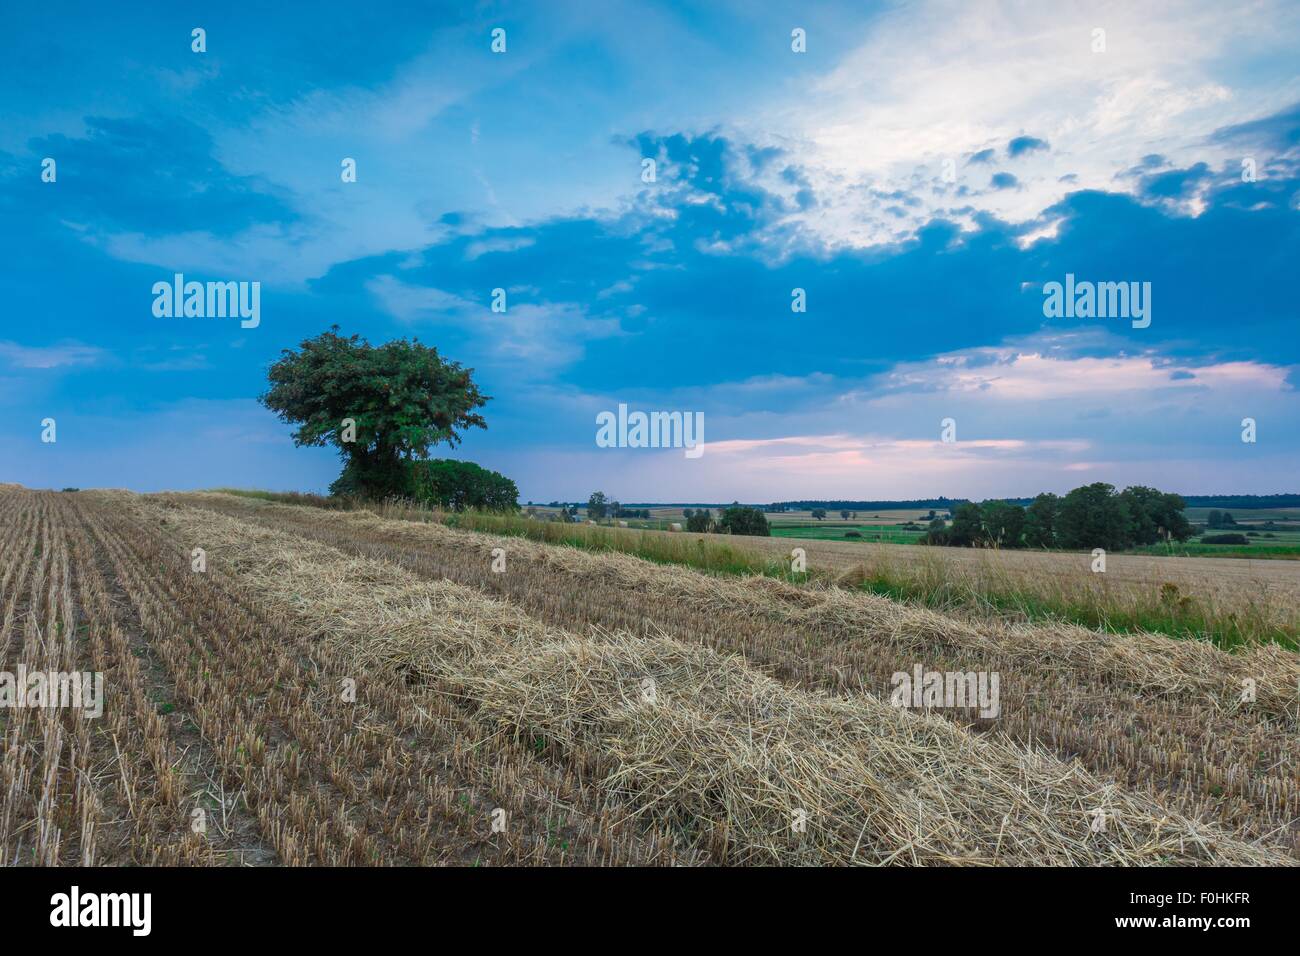 Stoppelfeld mit mit einzelnen alten Eberesche. Schönen Sommer ländliche Landschaft fotografiert in Polen. Stockfoto